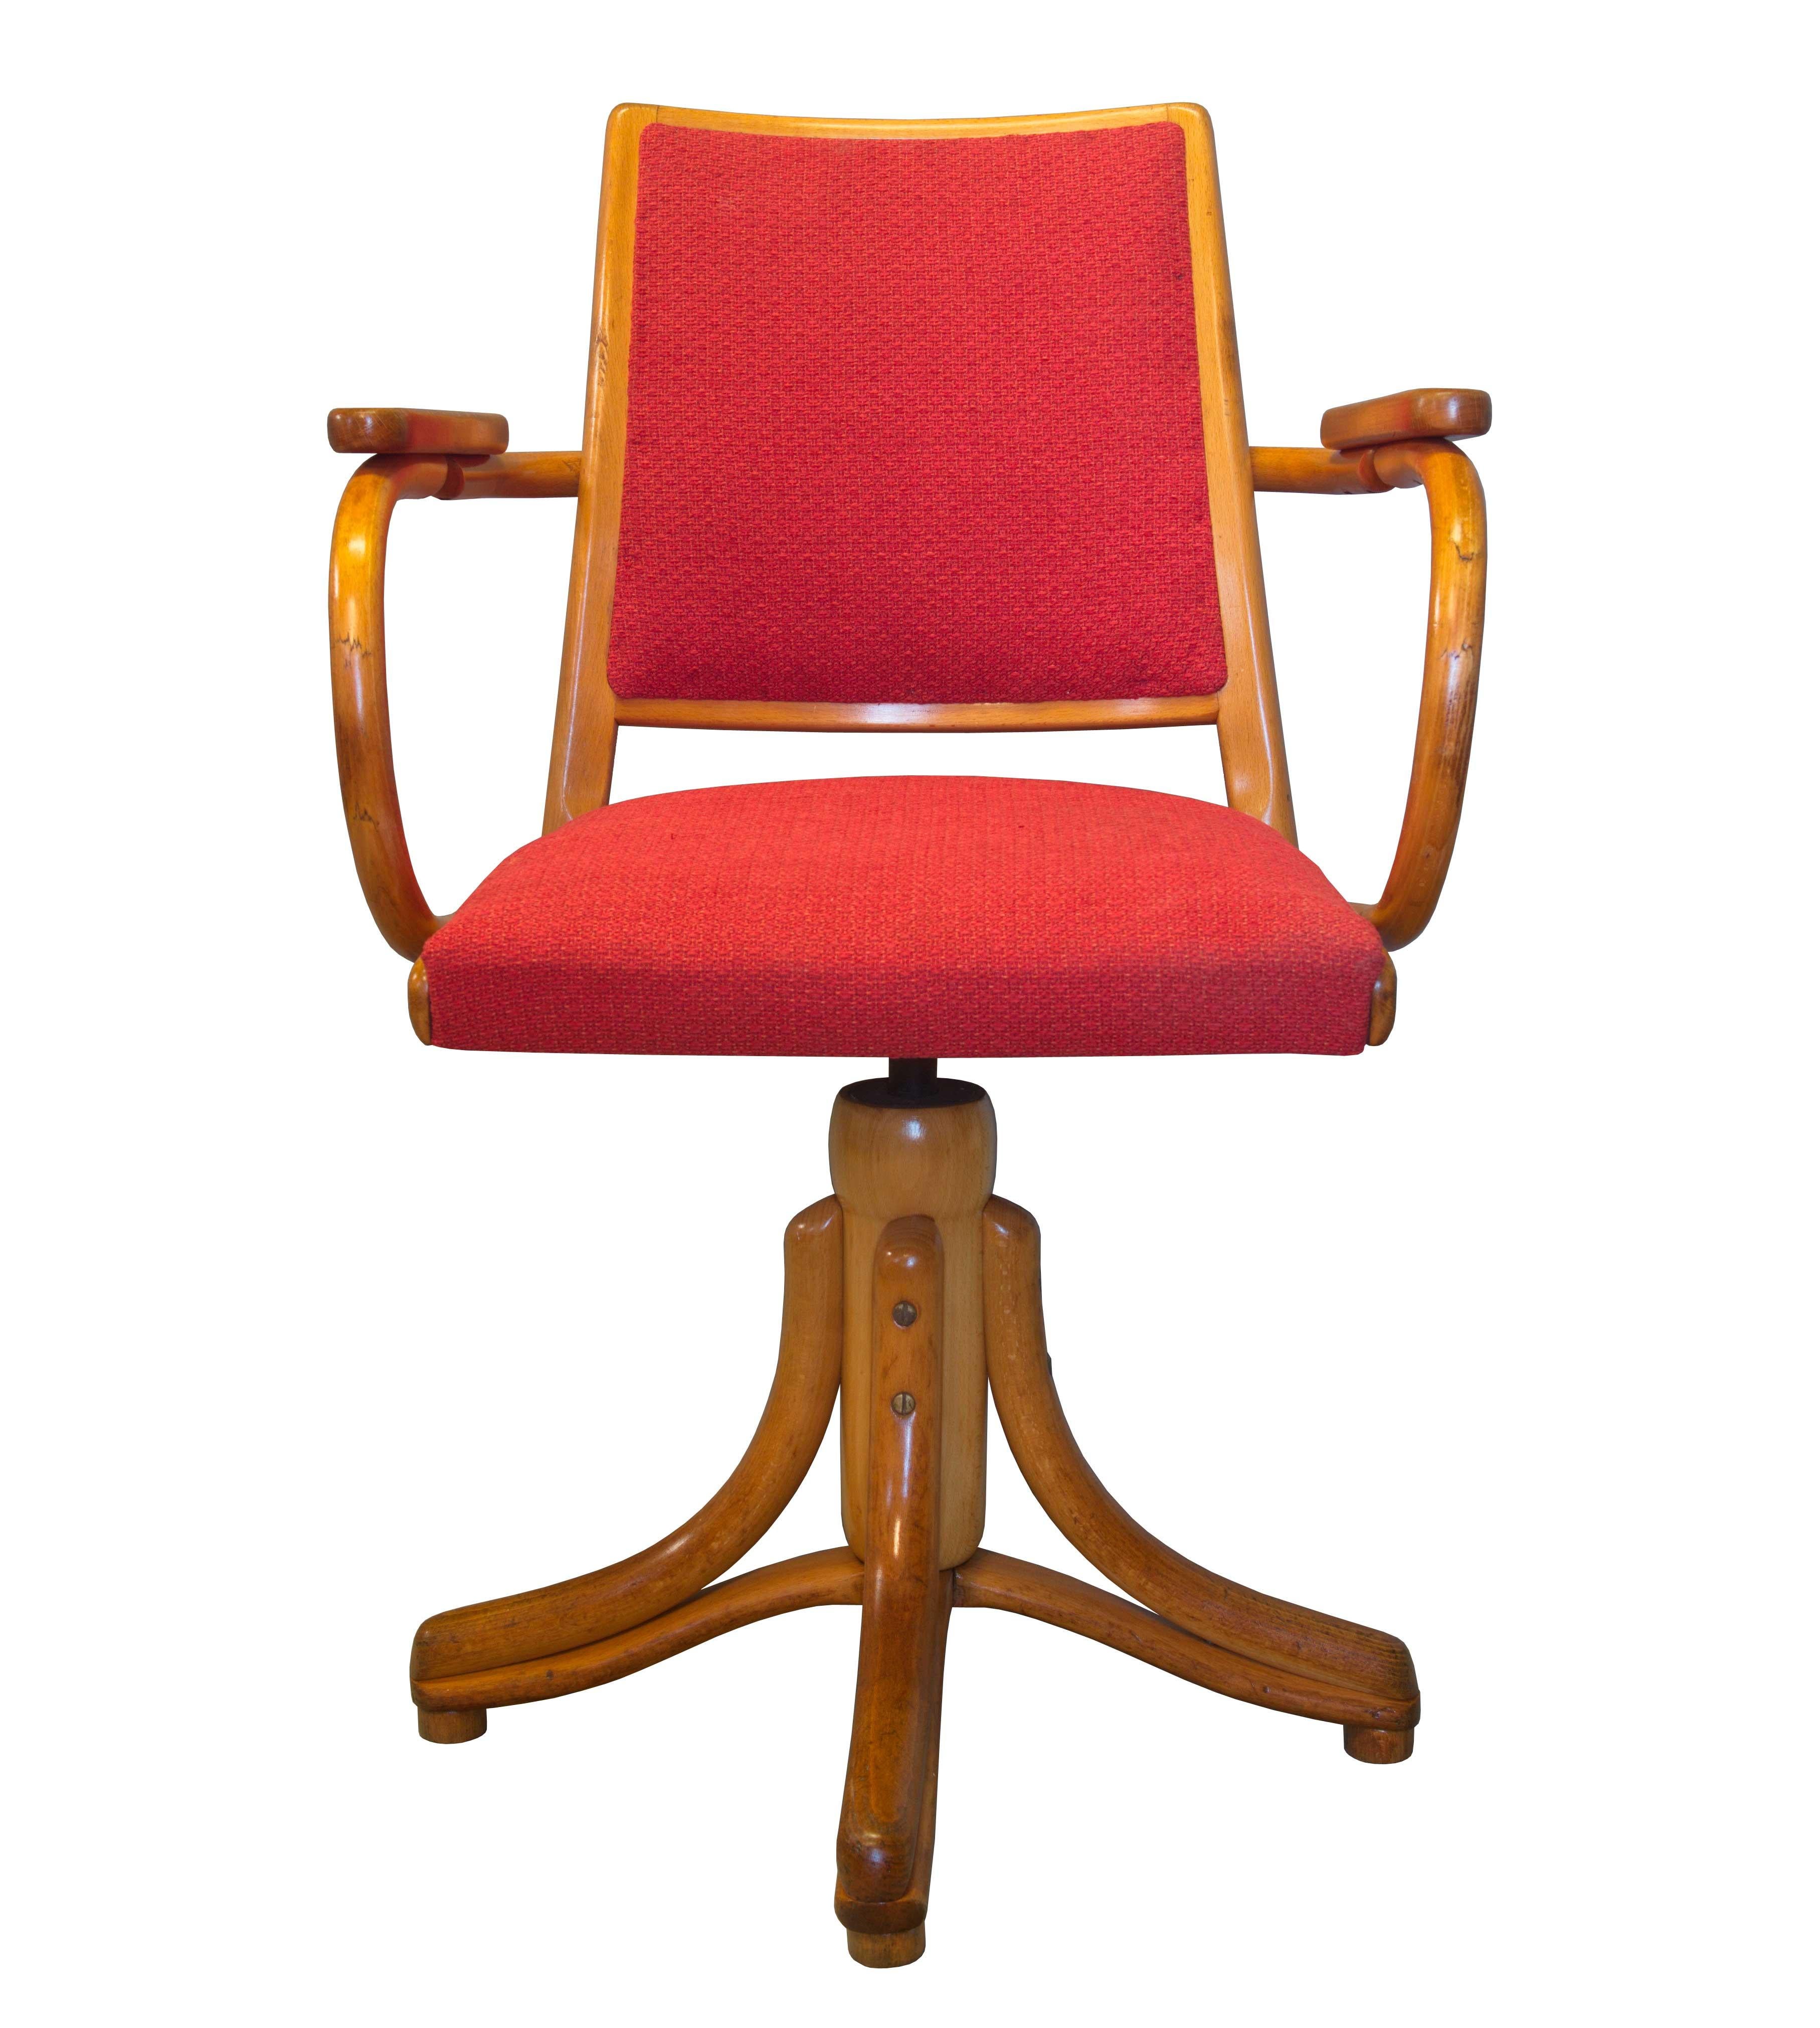 Dieser elegante und zeitlose Drehsessel wurde in den 1950er Jahren von der Firma TON in der Tschechoslowakei entworfen und hergestellt. Er trägt jedoch die Markierungen des Labels LIGNA, die auf der Unterseite der Sitzfläche des Stuhls zu sehen